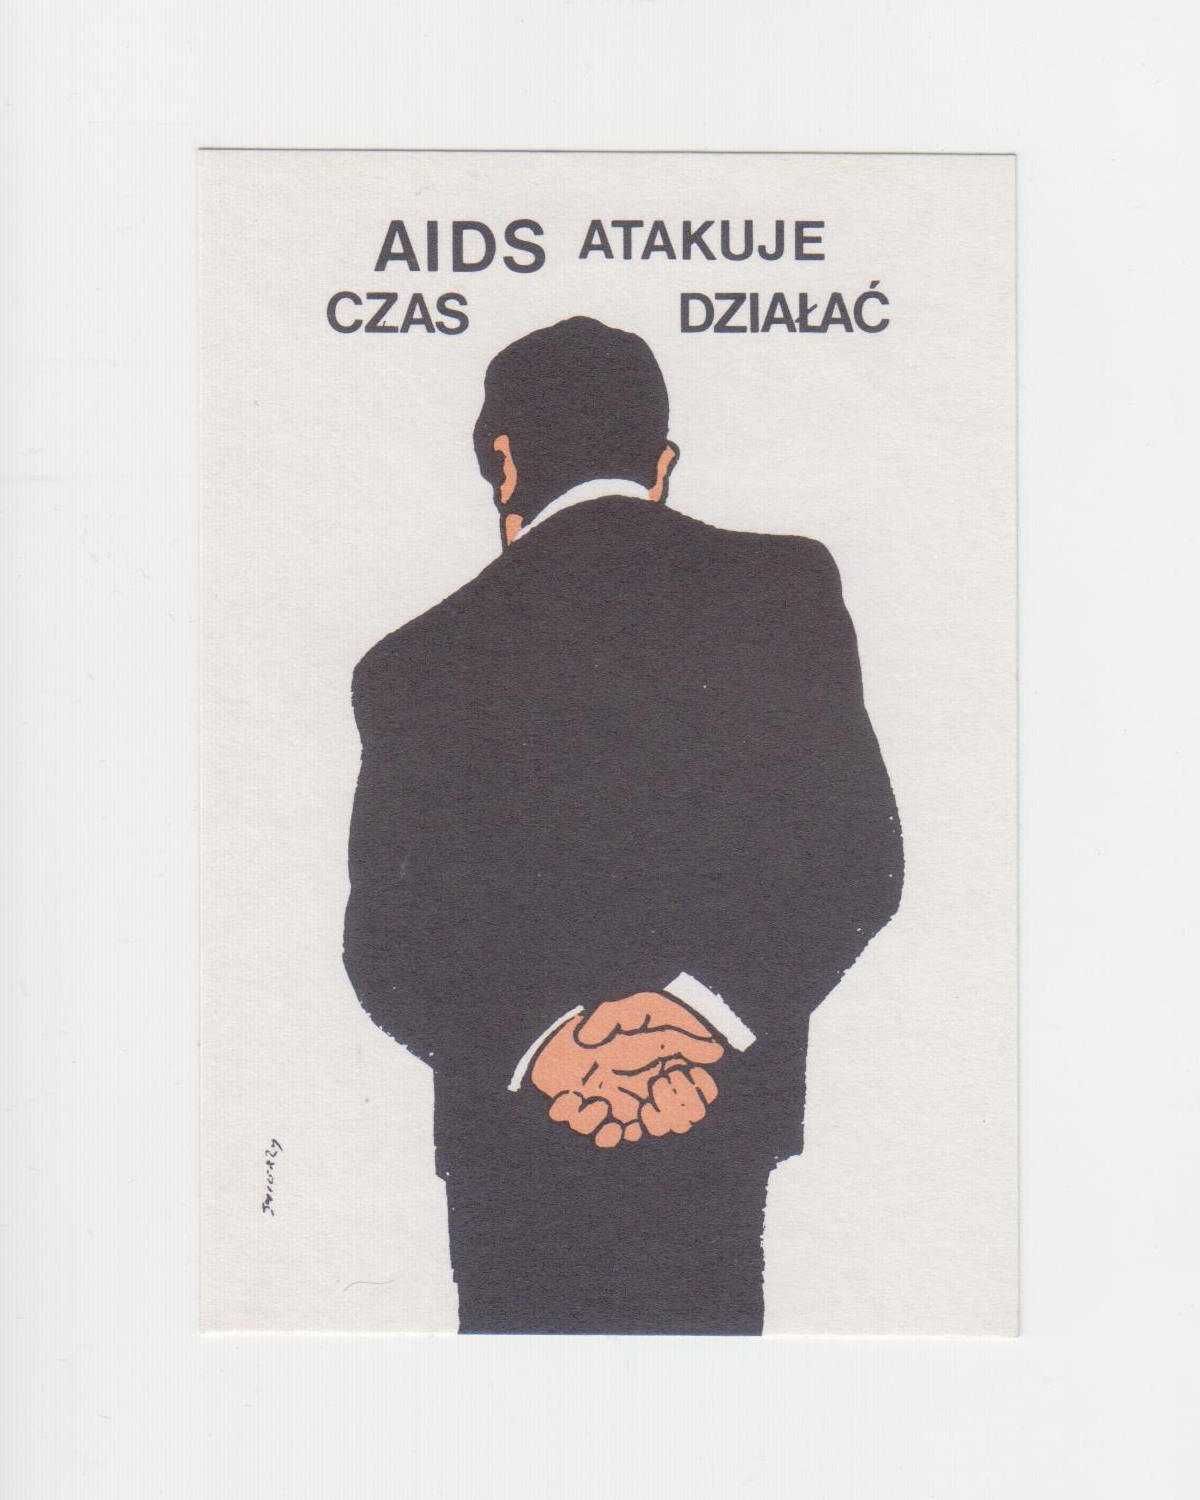 Naklejka informacyjna _ AIDS